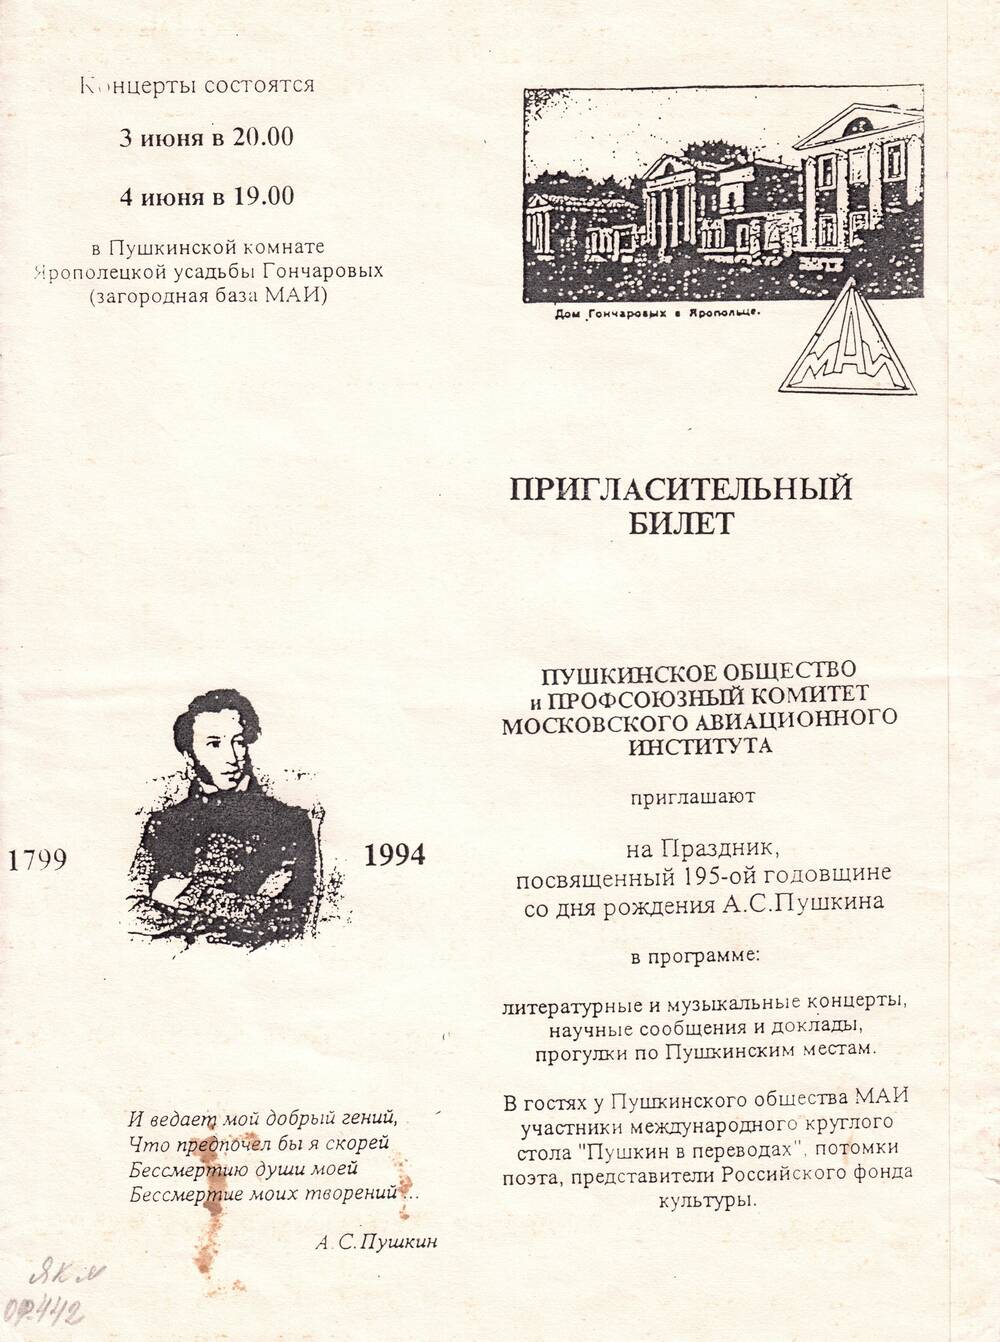 Пригласительный билет на праздник, посвященный 195-й годовщине со дня рождения А. С. Пушкина, 3-4/VI.1994 г.